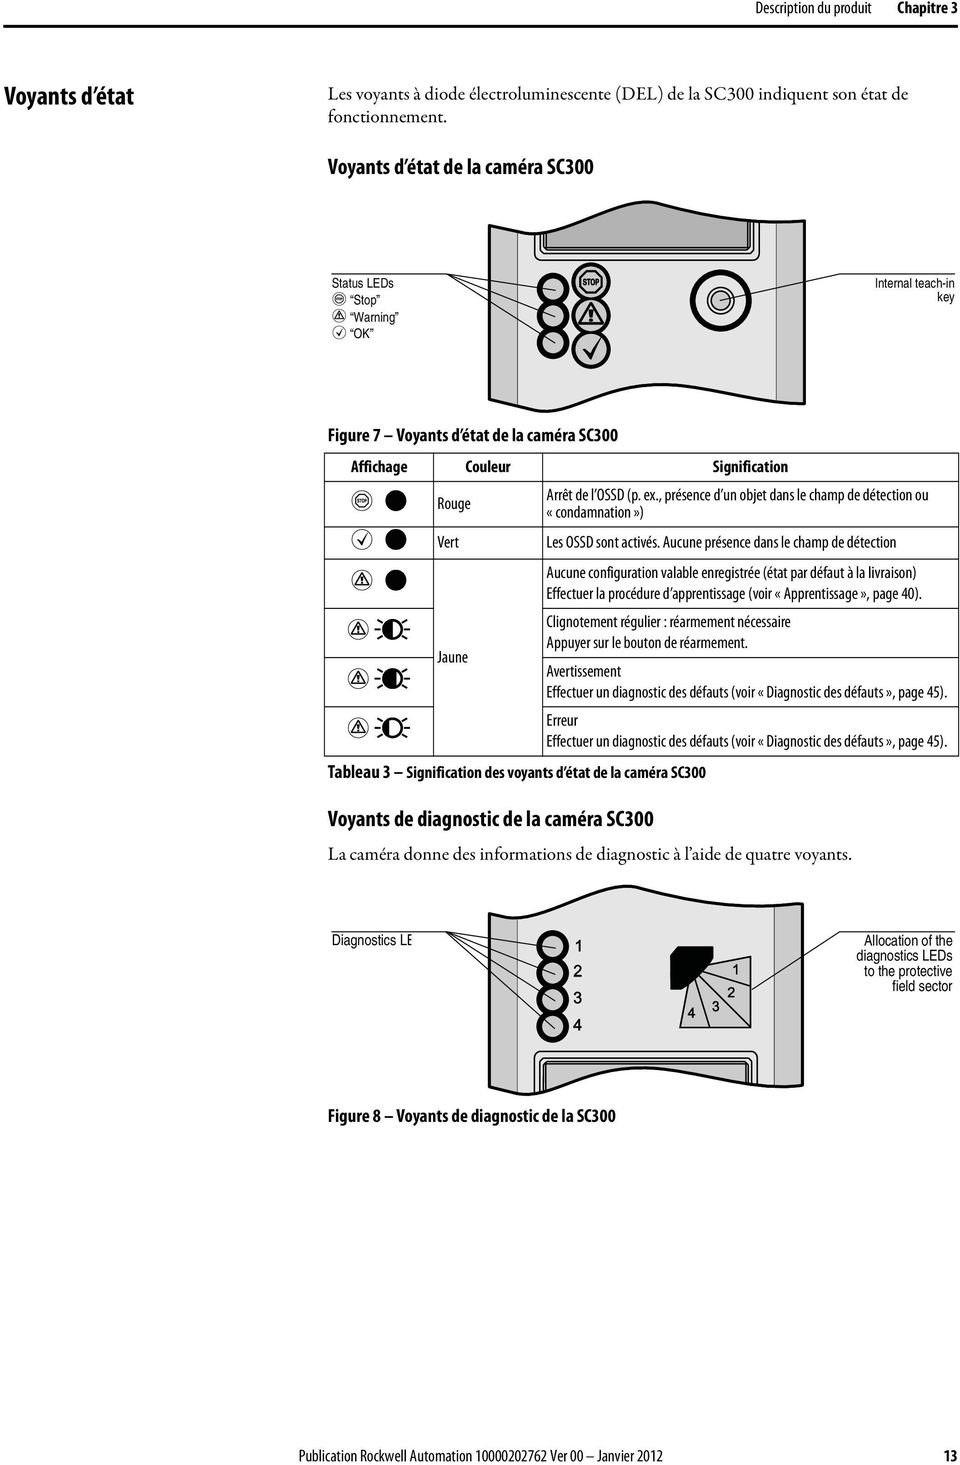 des voyants d état de la caméra SC300 Voyants de diagnostic de la caméra SC300 Arrêt de l OSSD (p. ex., présence d un objet dans le champ de détection ou «condamnation») Les OSSD sont activés.